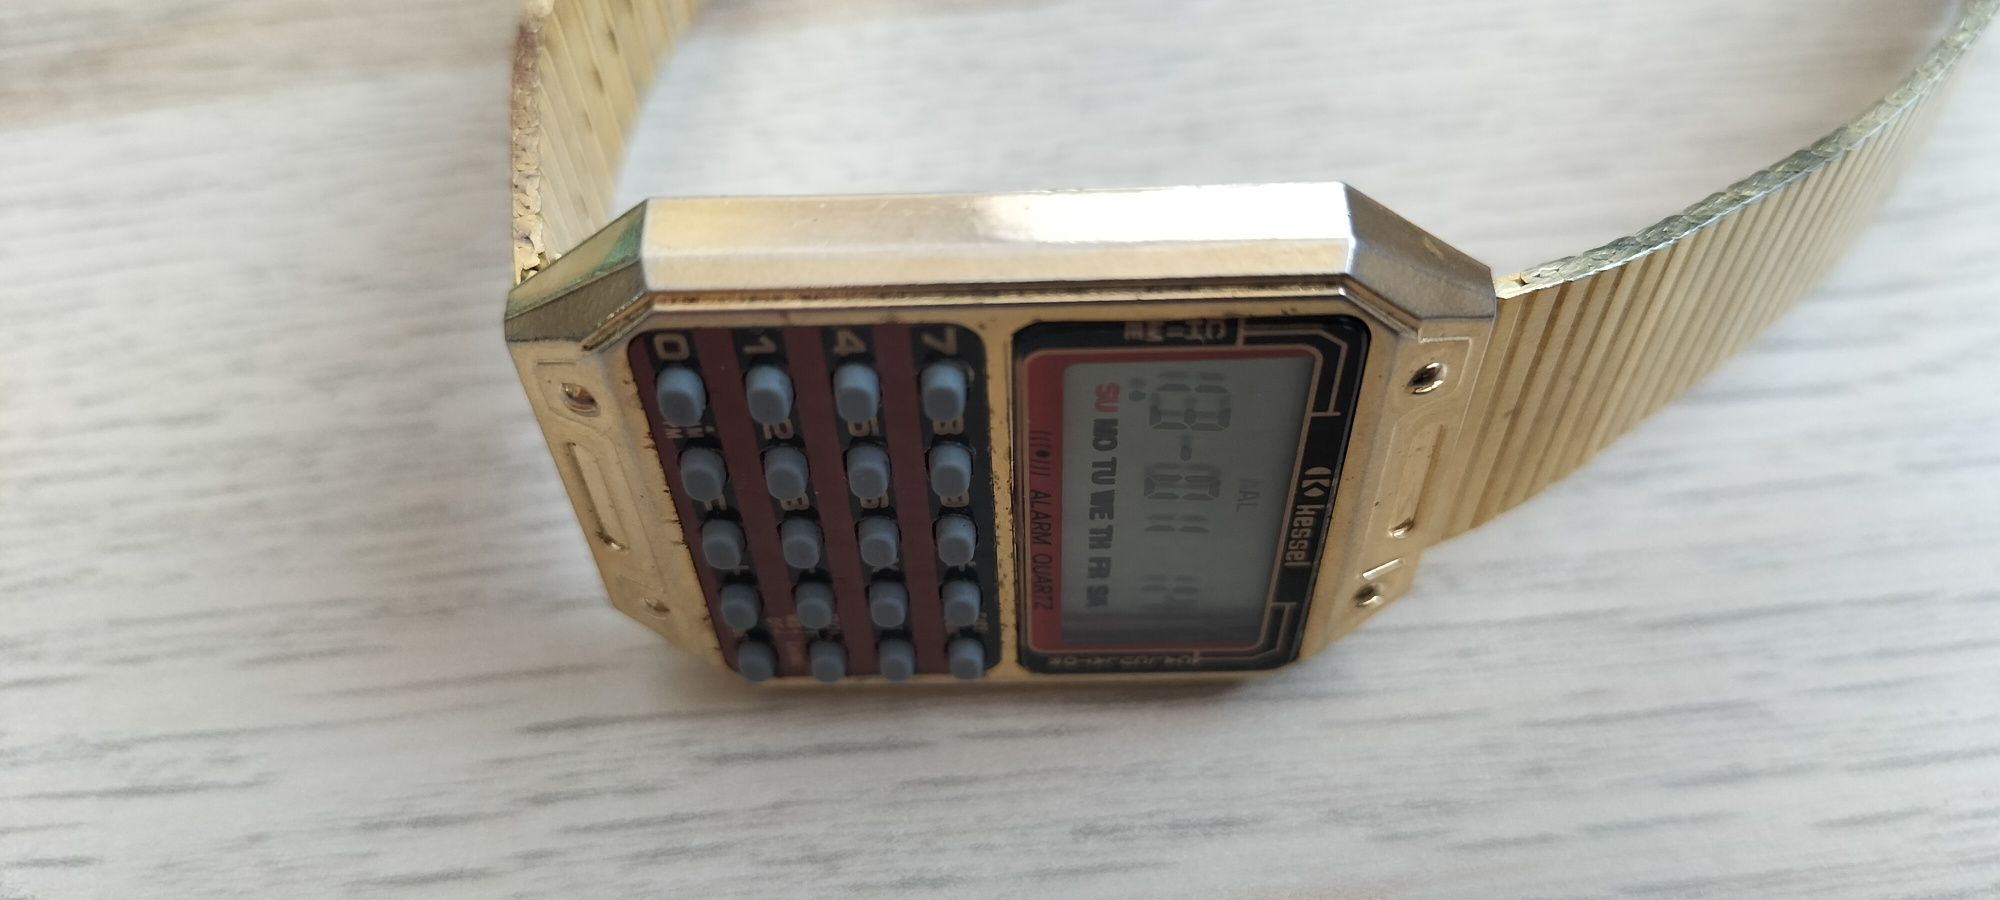 Zegarek elektroniczny z kalkulatorem Kessel